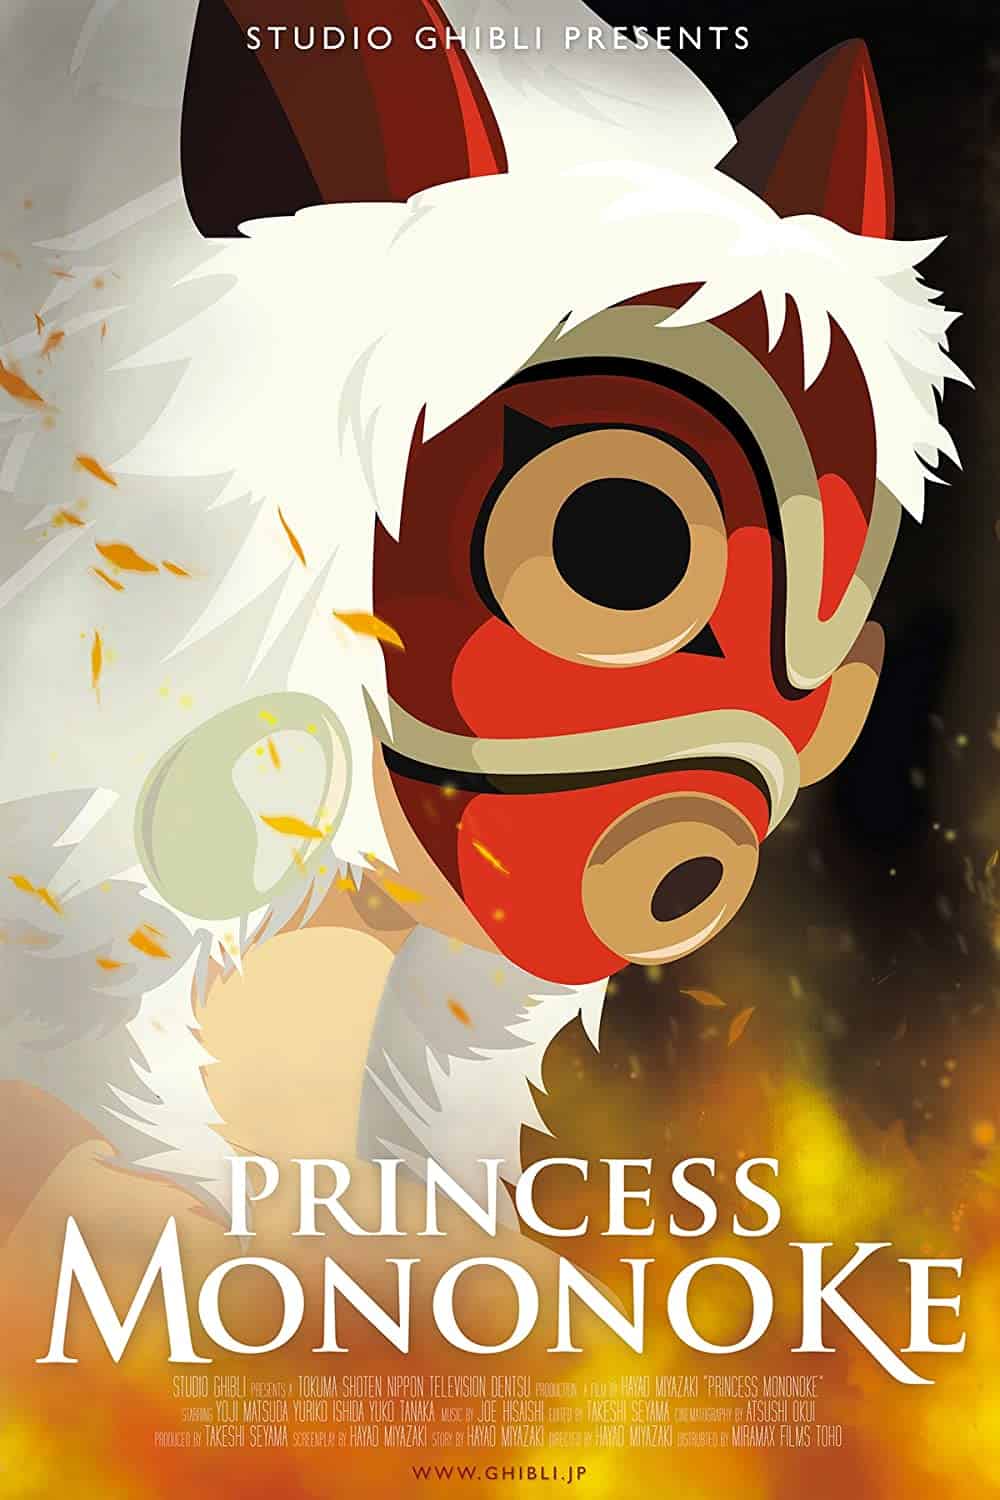 Princess Mononoke (1997) Best Princess Movies